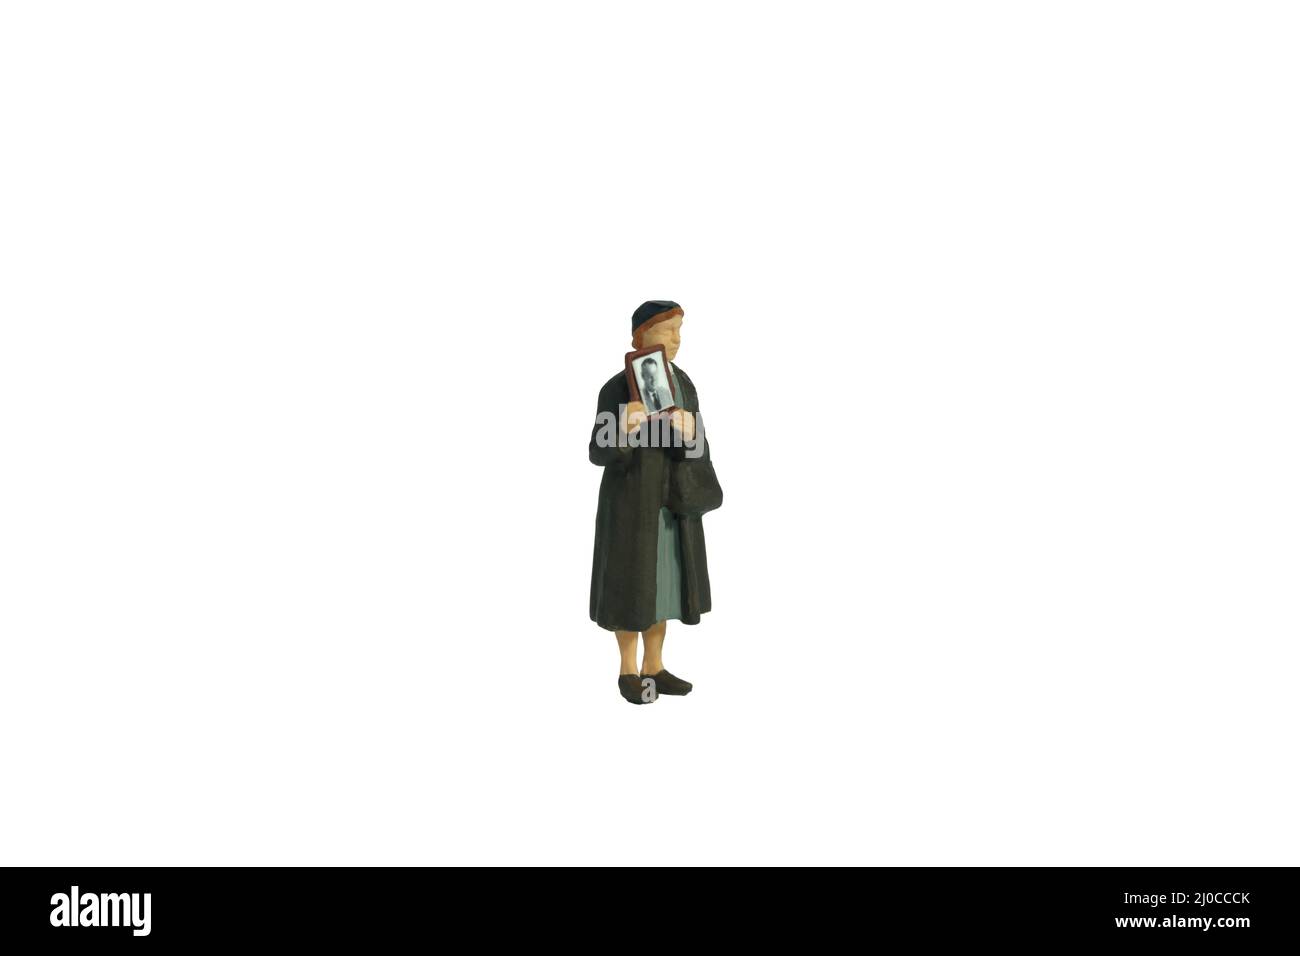 Photographie miniature de personnage de jouet de personnes. Une femme tenant un cadre photo, recherchant une personne manquante en raison d'un conflit de guerre. Isolé sur fond blanc. Banque D'Images